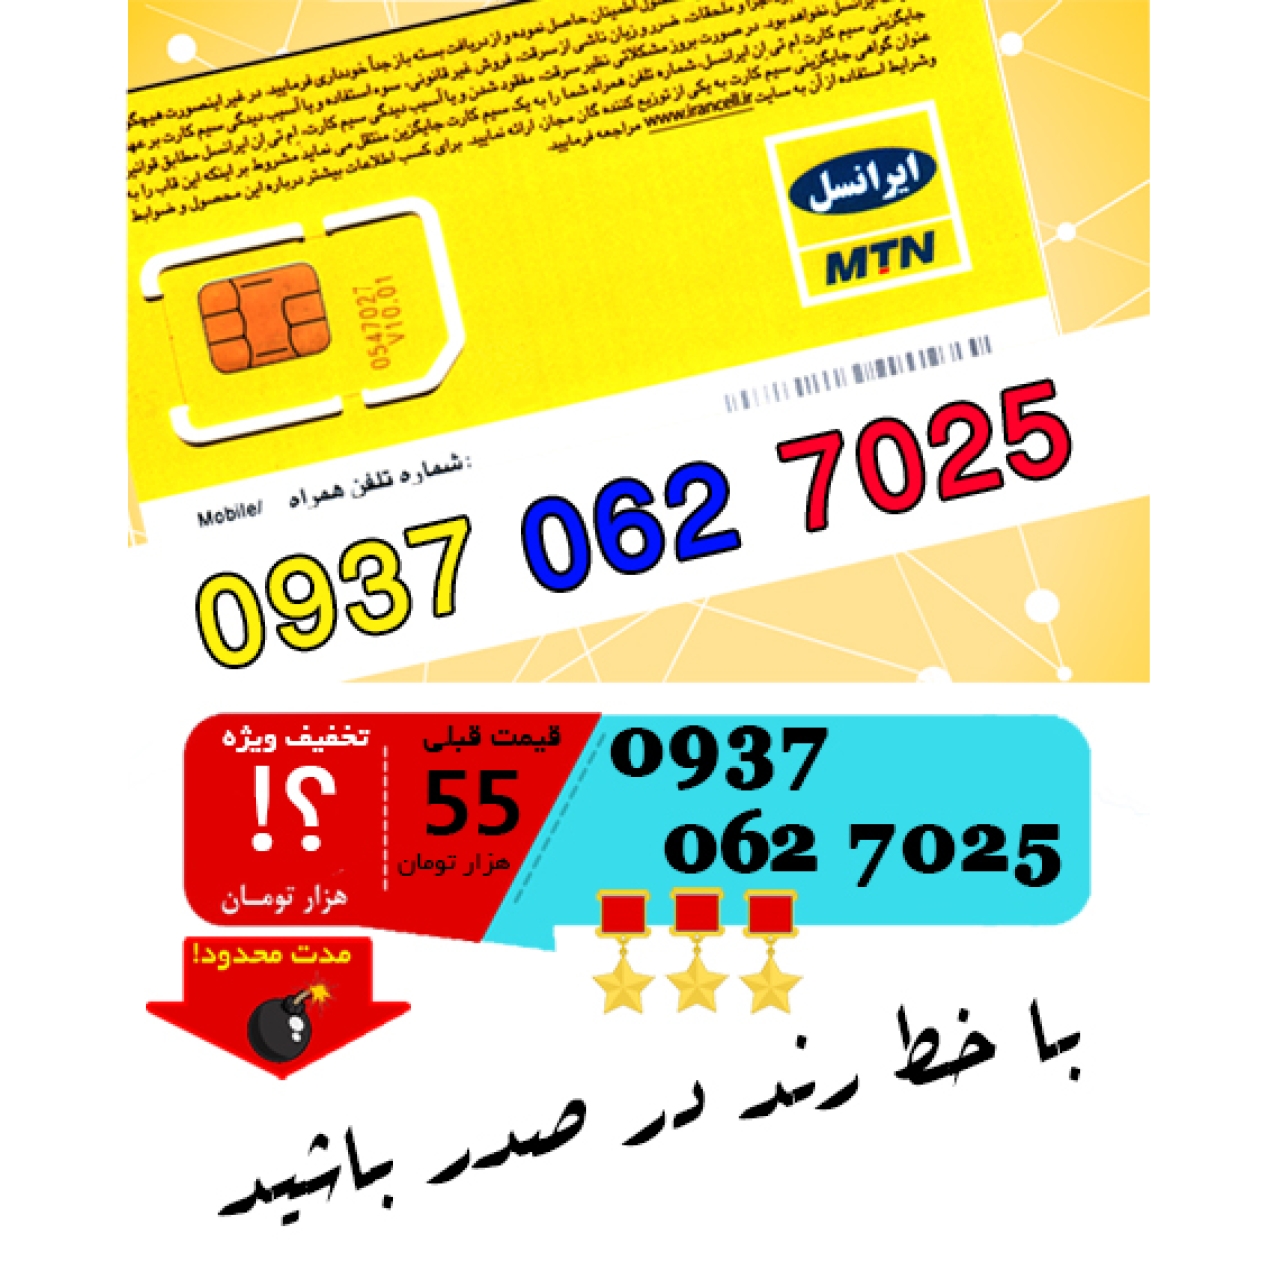 سیم کارت اعتباری ایرانسل 09370627025